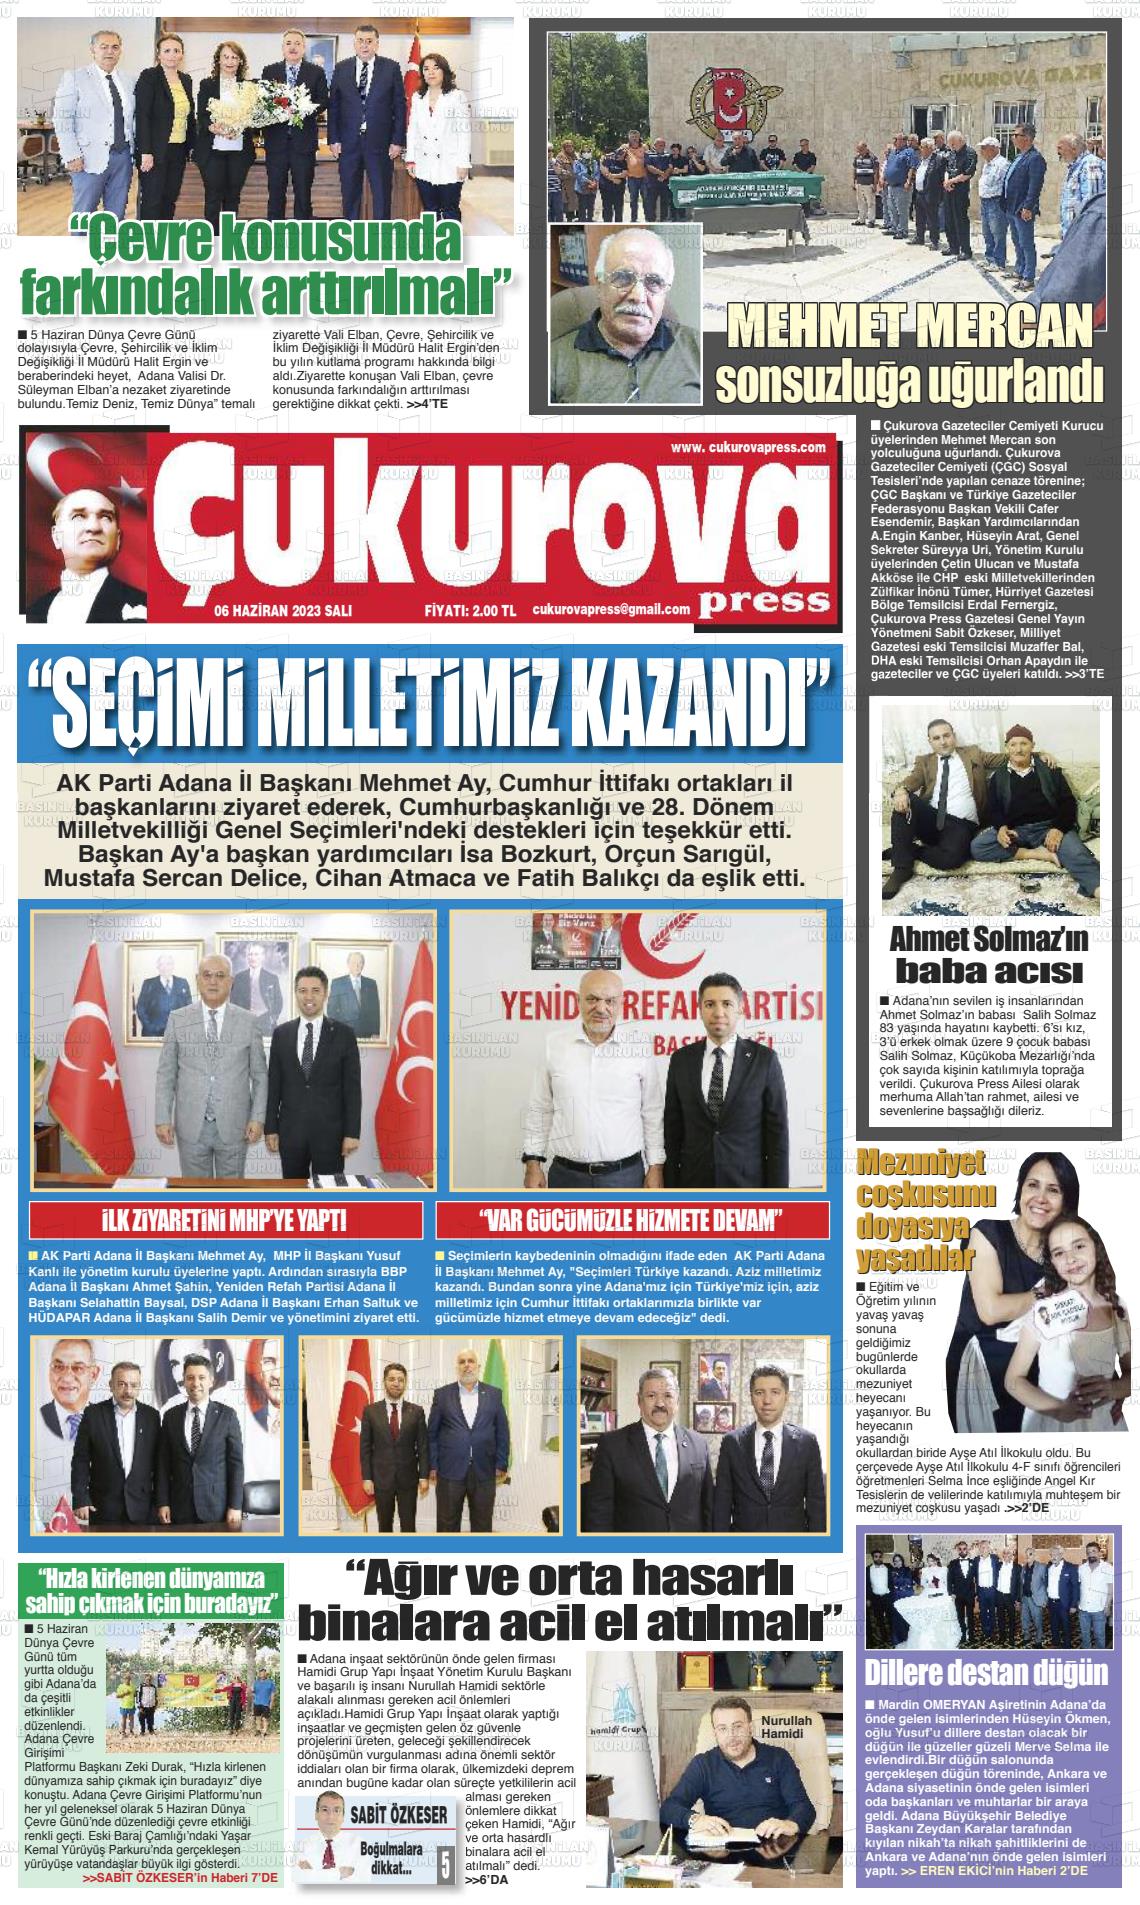 06 Haziran 2023 Çukurova Press Gazete Manşeti